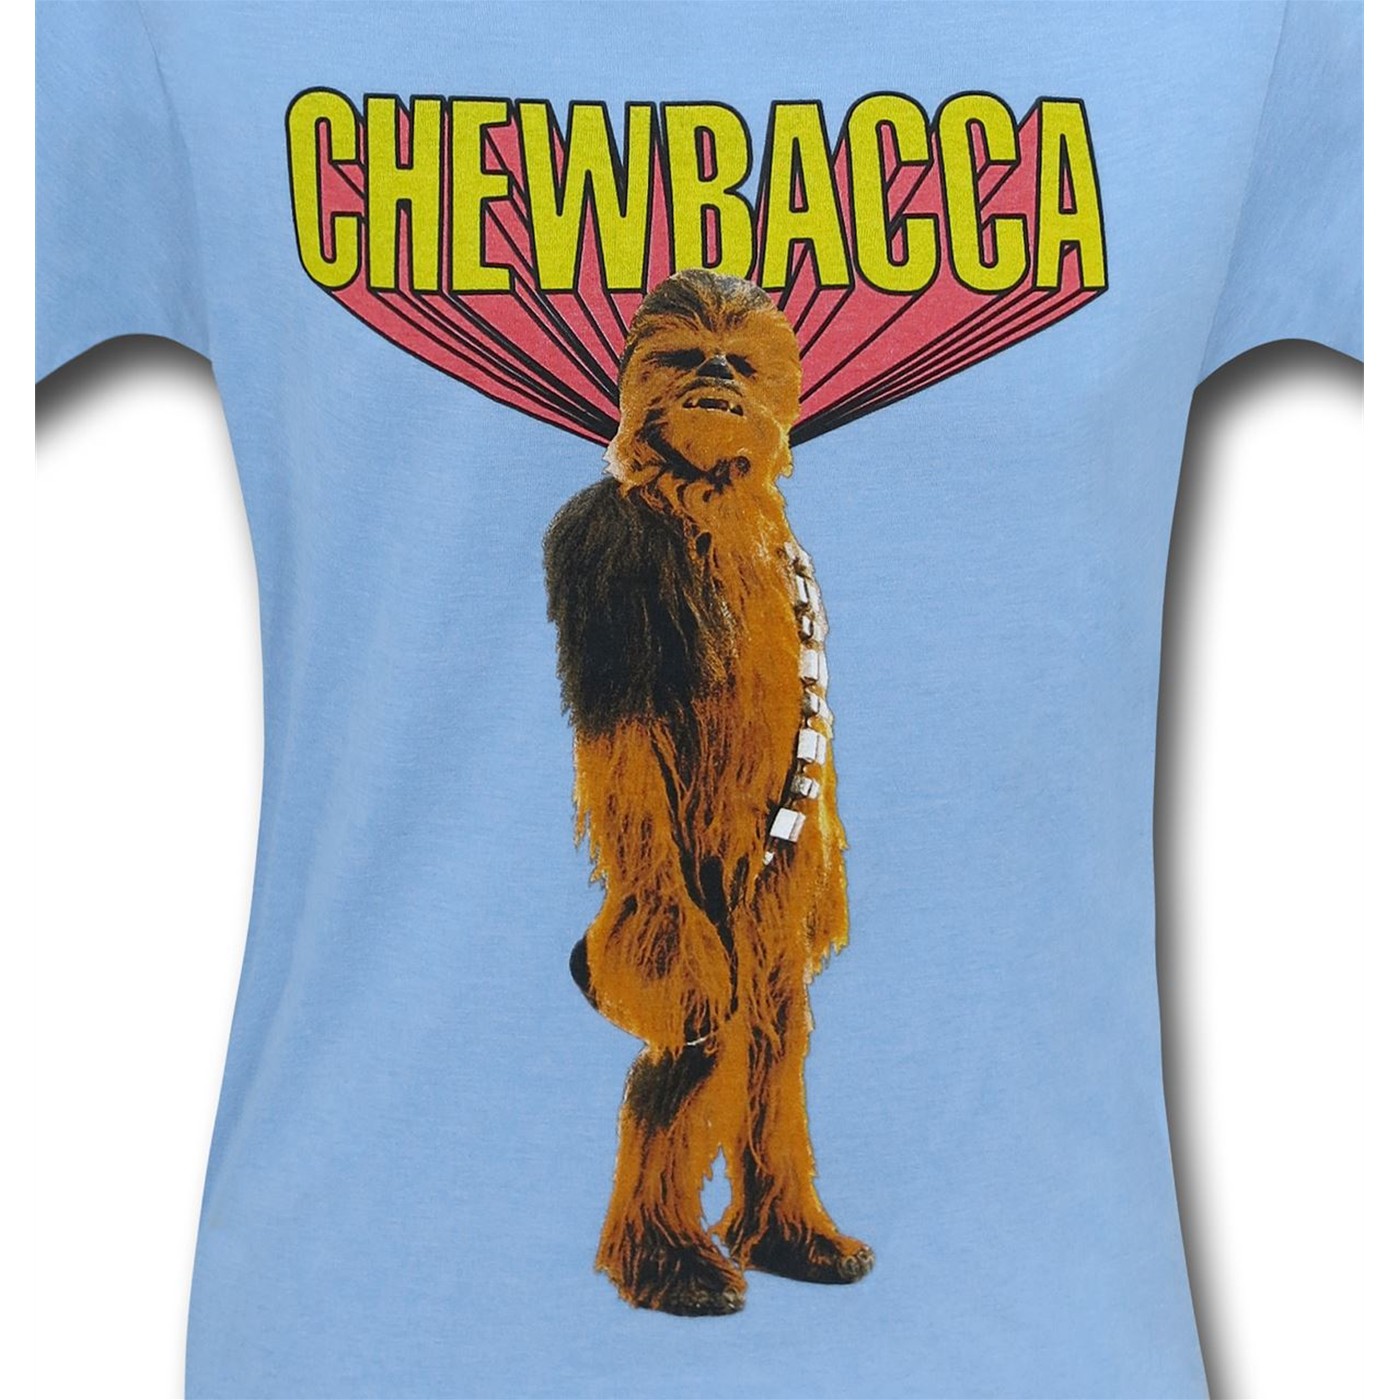 Star Wars Retro Chewbacca T-Shirt